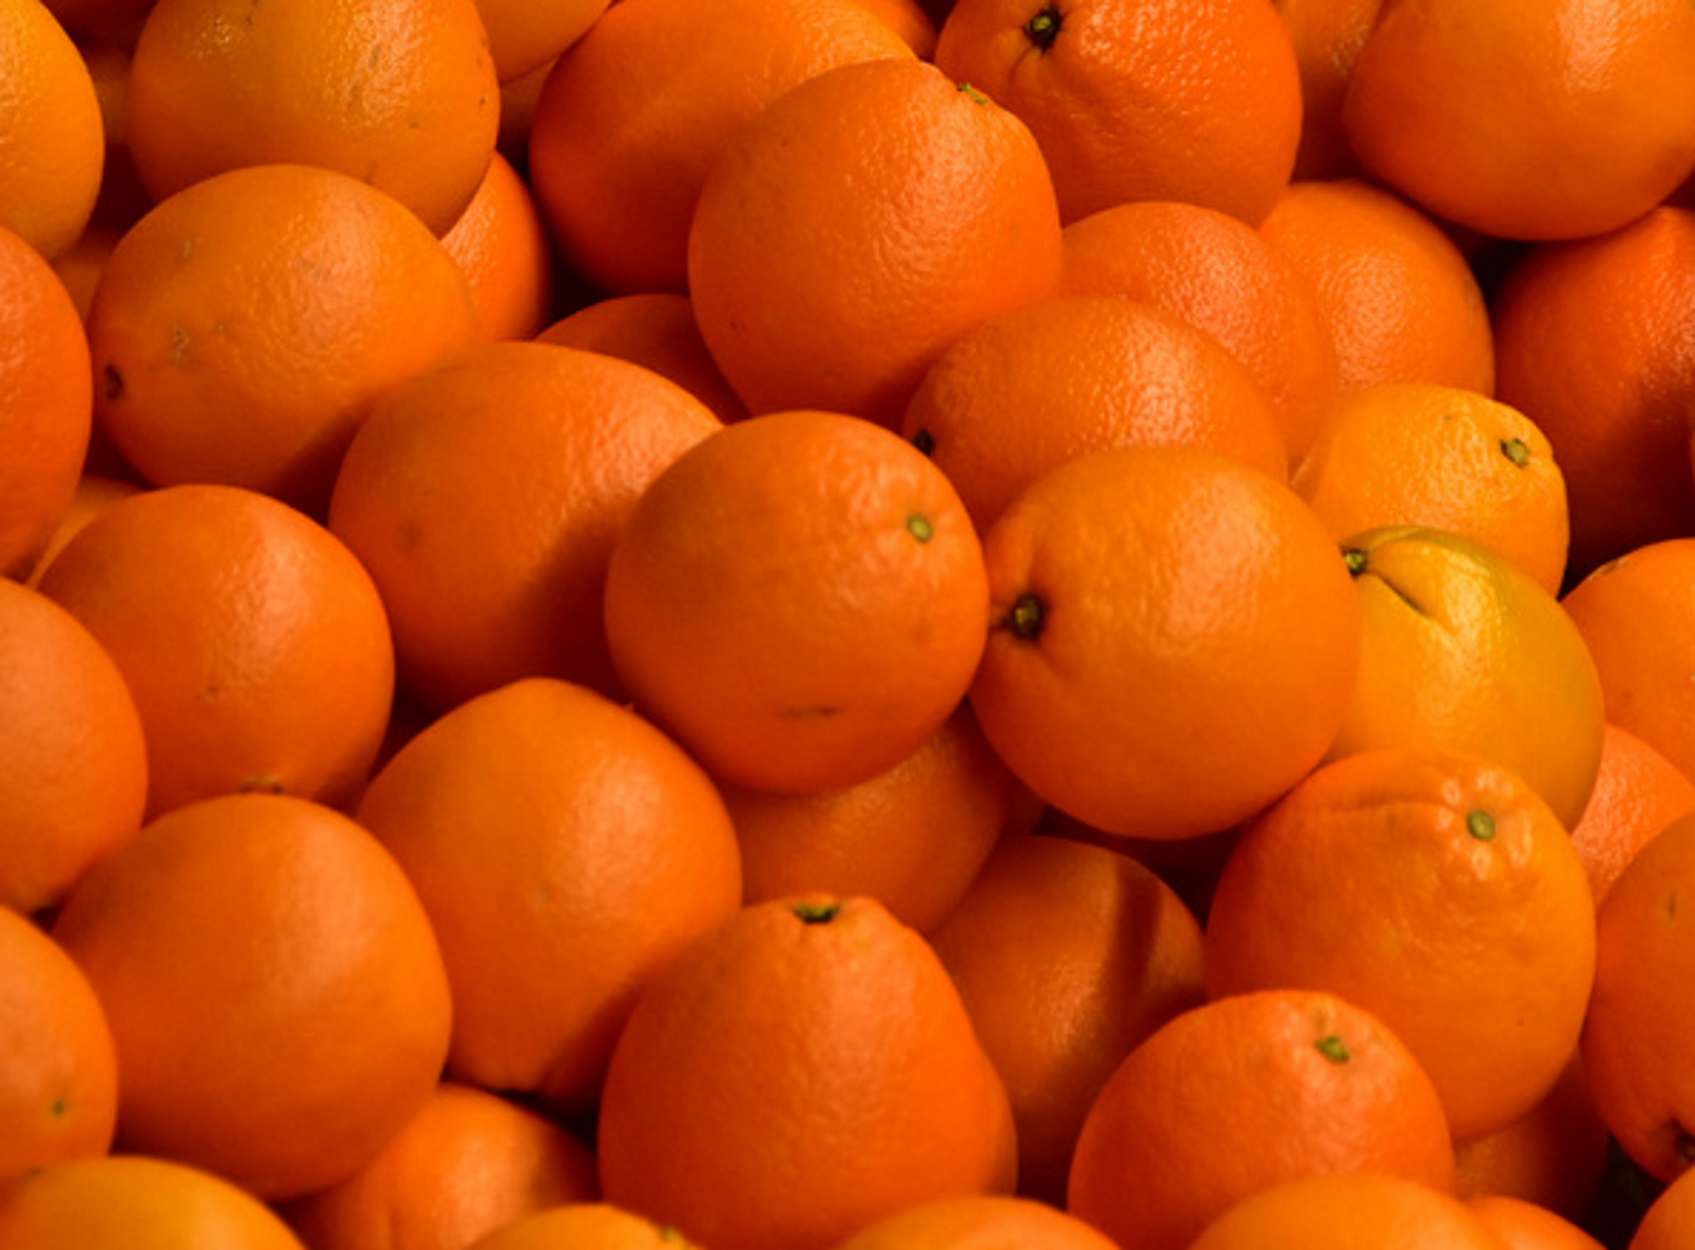 Αργολίδα: Σπείρα – “ακρίδα” άρπαξε 9 τόνους πορτοκάλια από αγροκτήματα